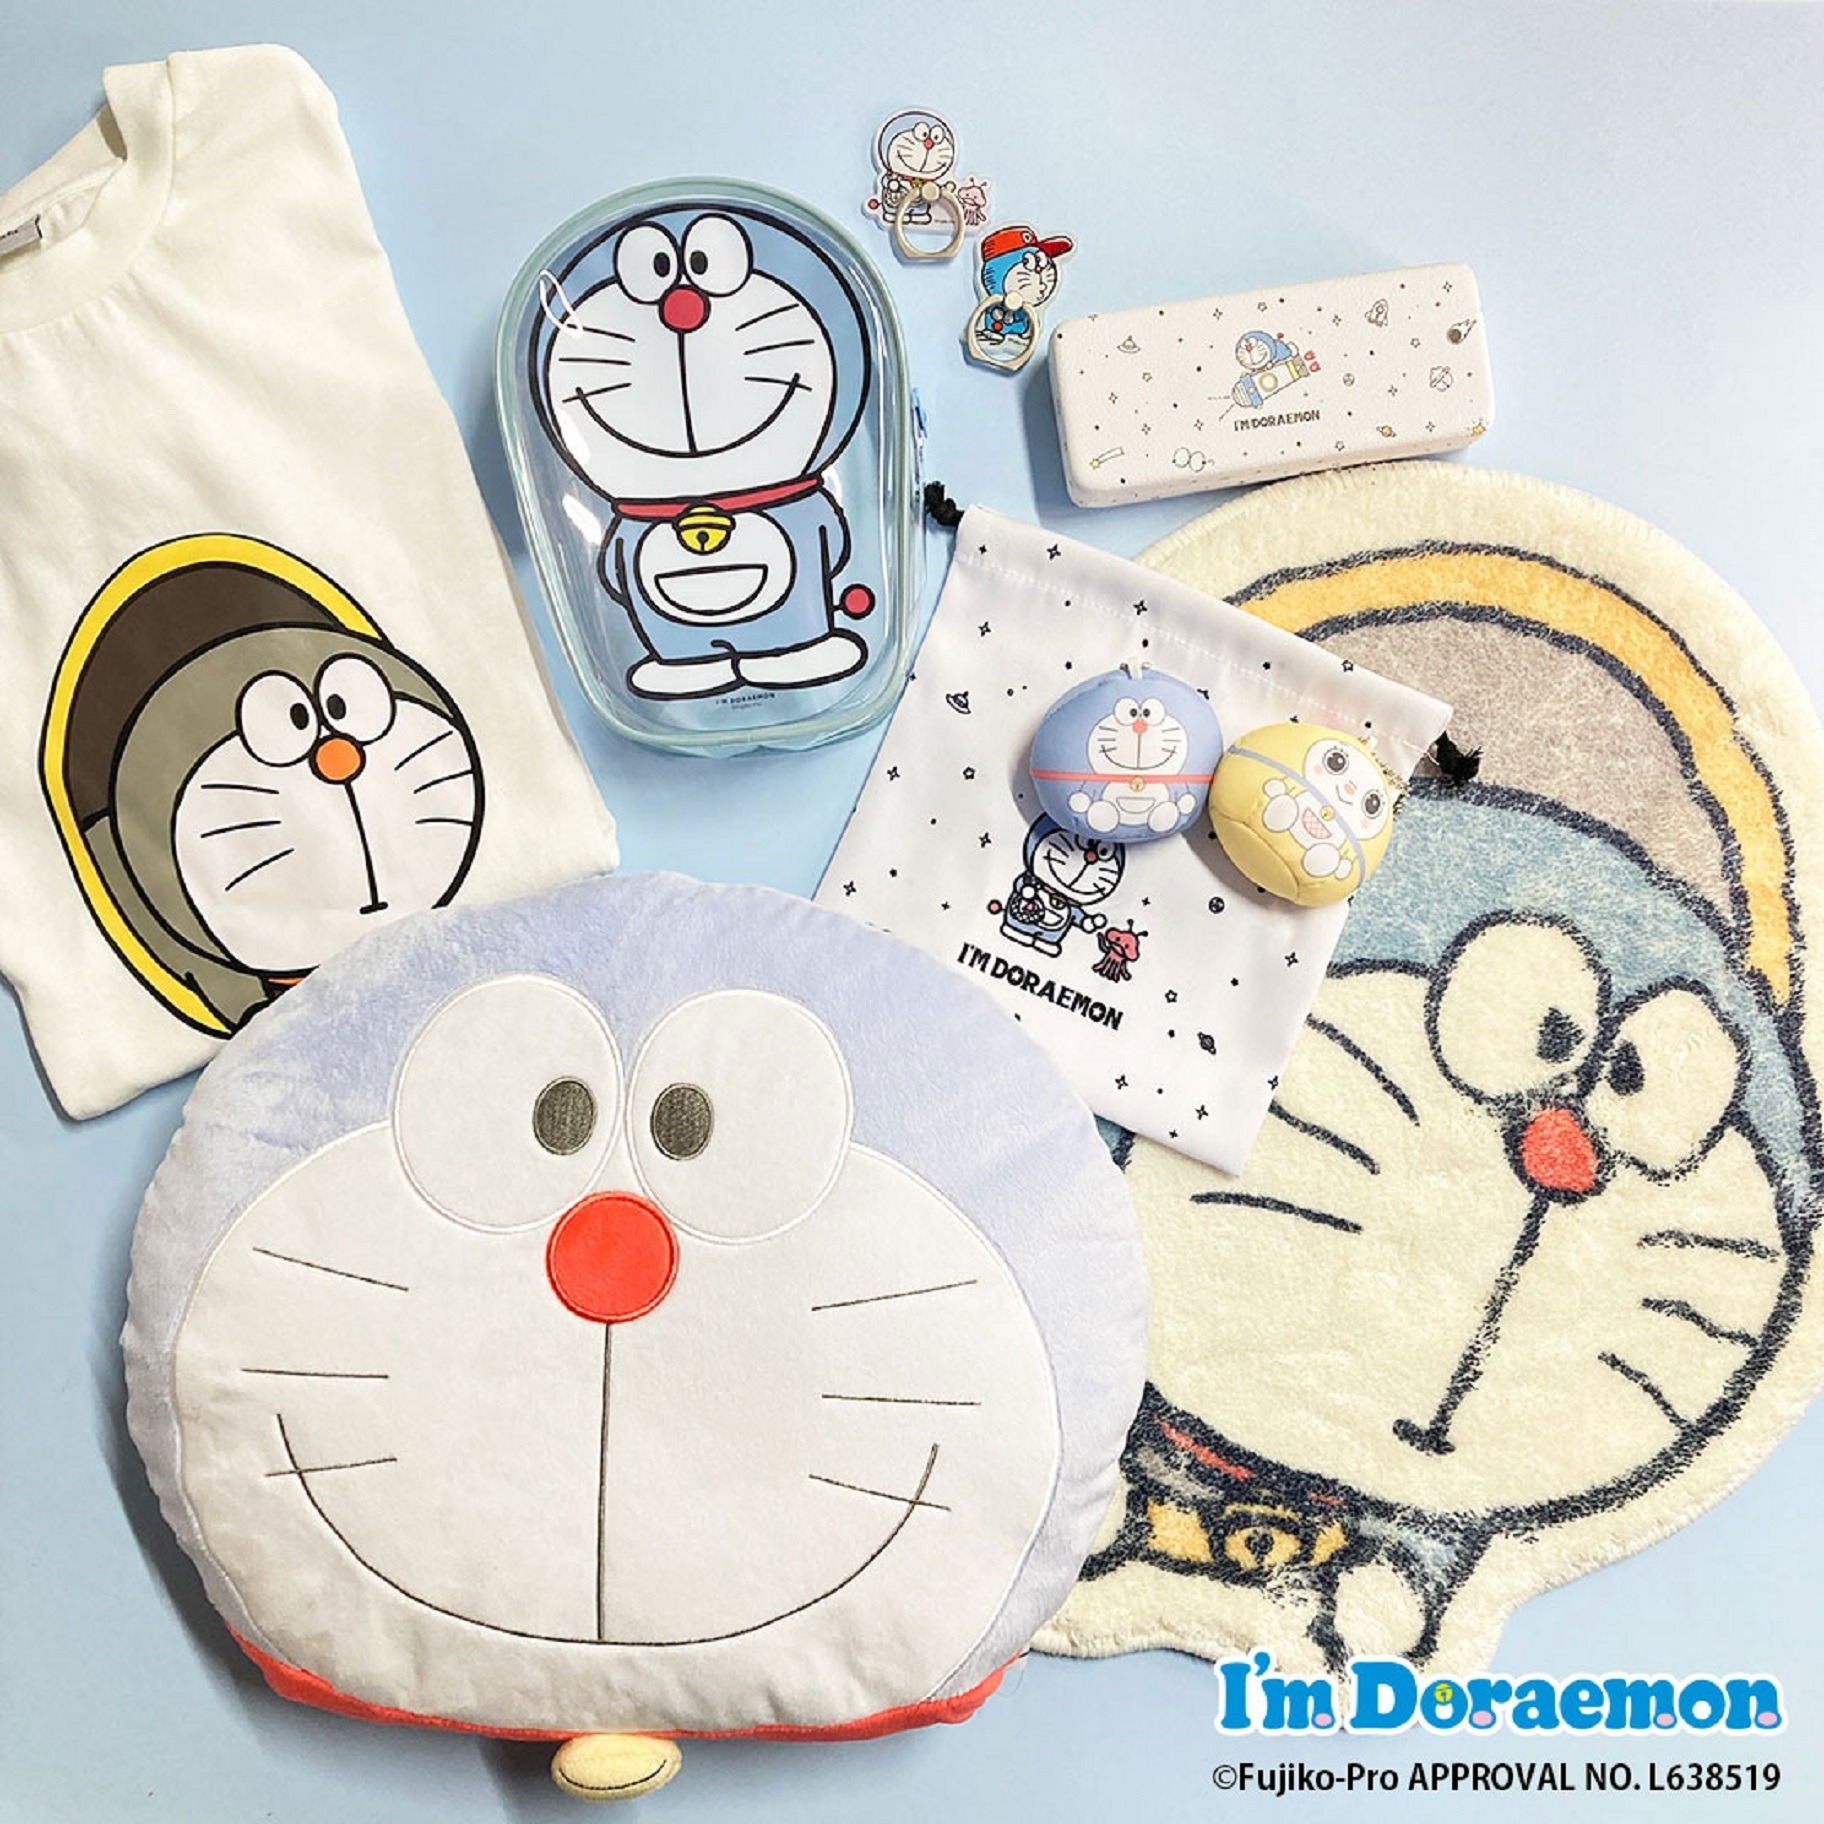 ドラえもんの「I'm Doraemon」シリーズがサンキューマートに登場